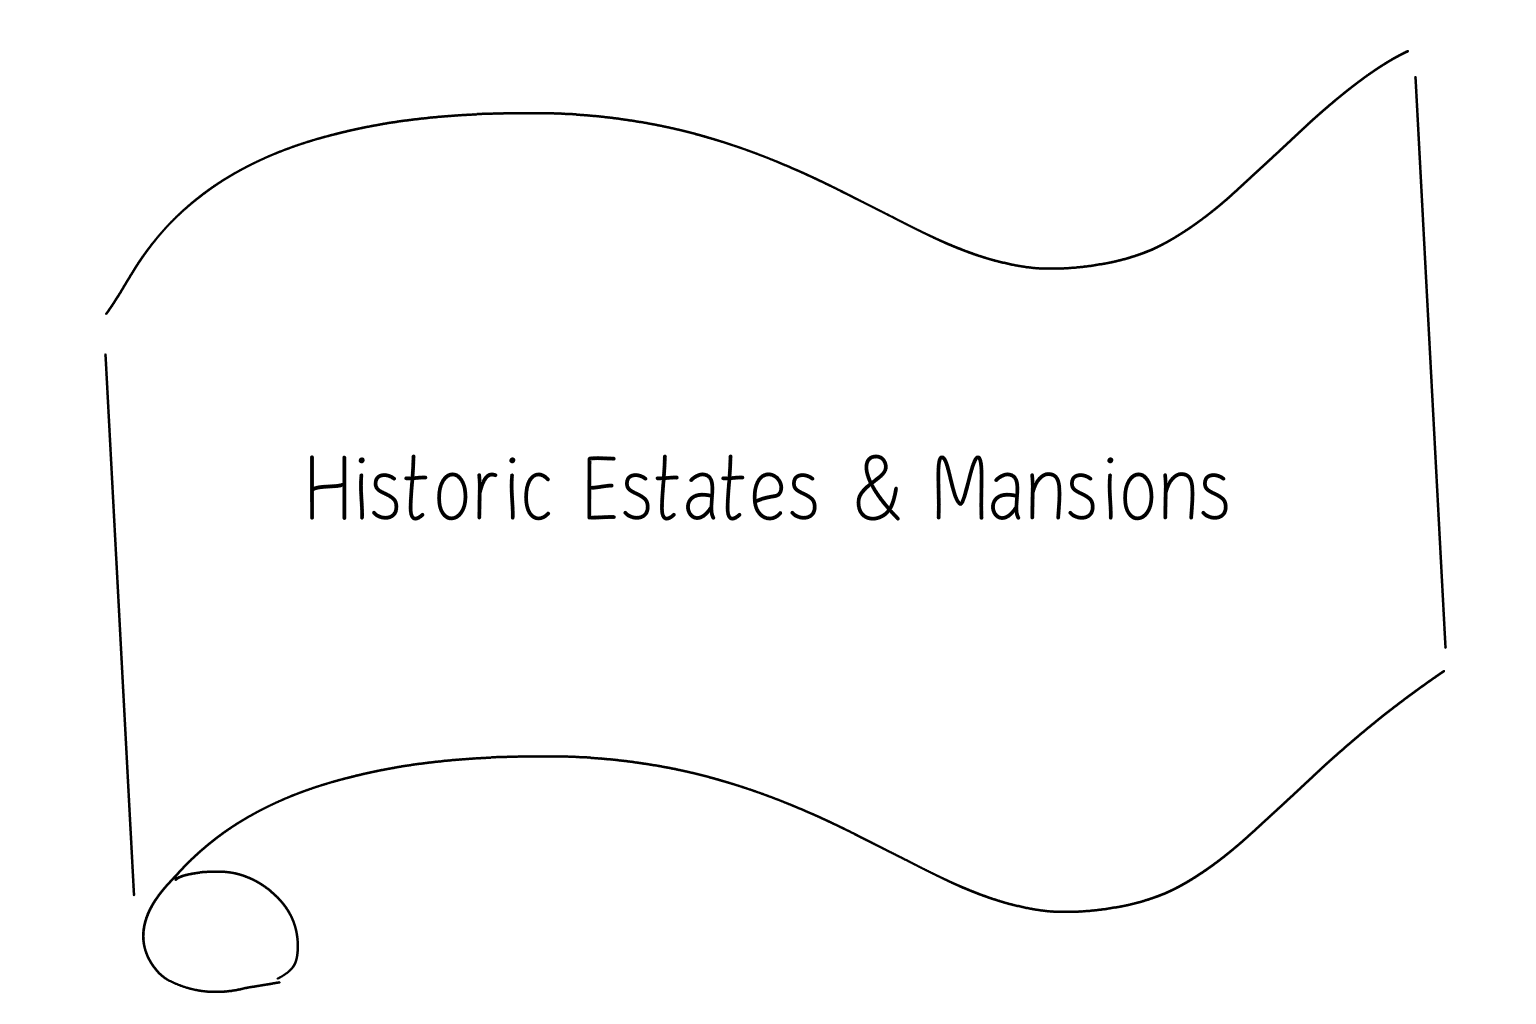 Иллюстрация Исторические поместья и особняки